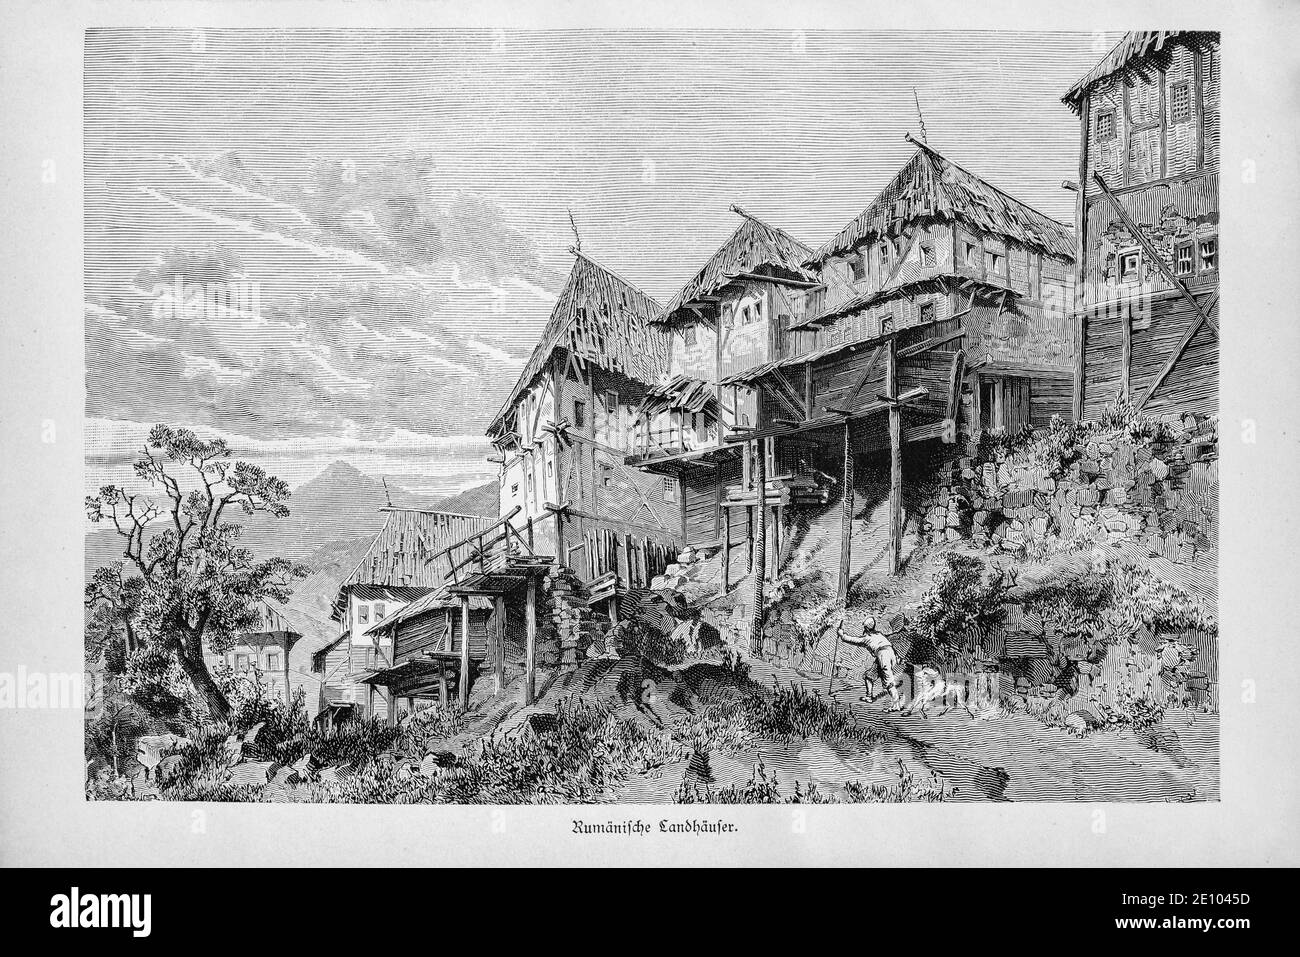 'Rumänische Landhäuser', case di campagna rumene a graticcio in uno stato di restauro, Bucarest, Romania, Breslau circa 1897 Foto Stock